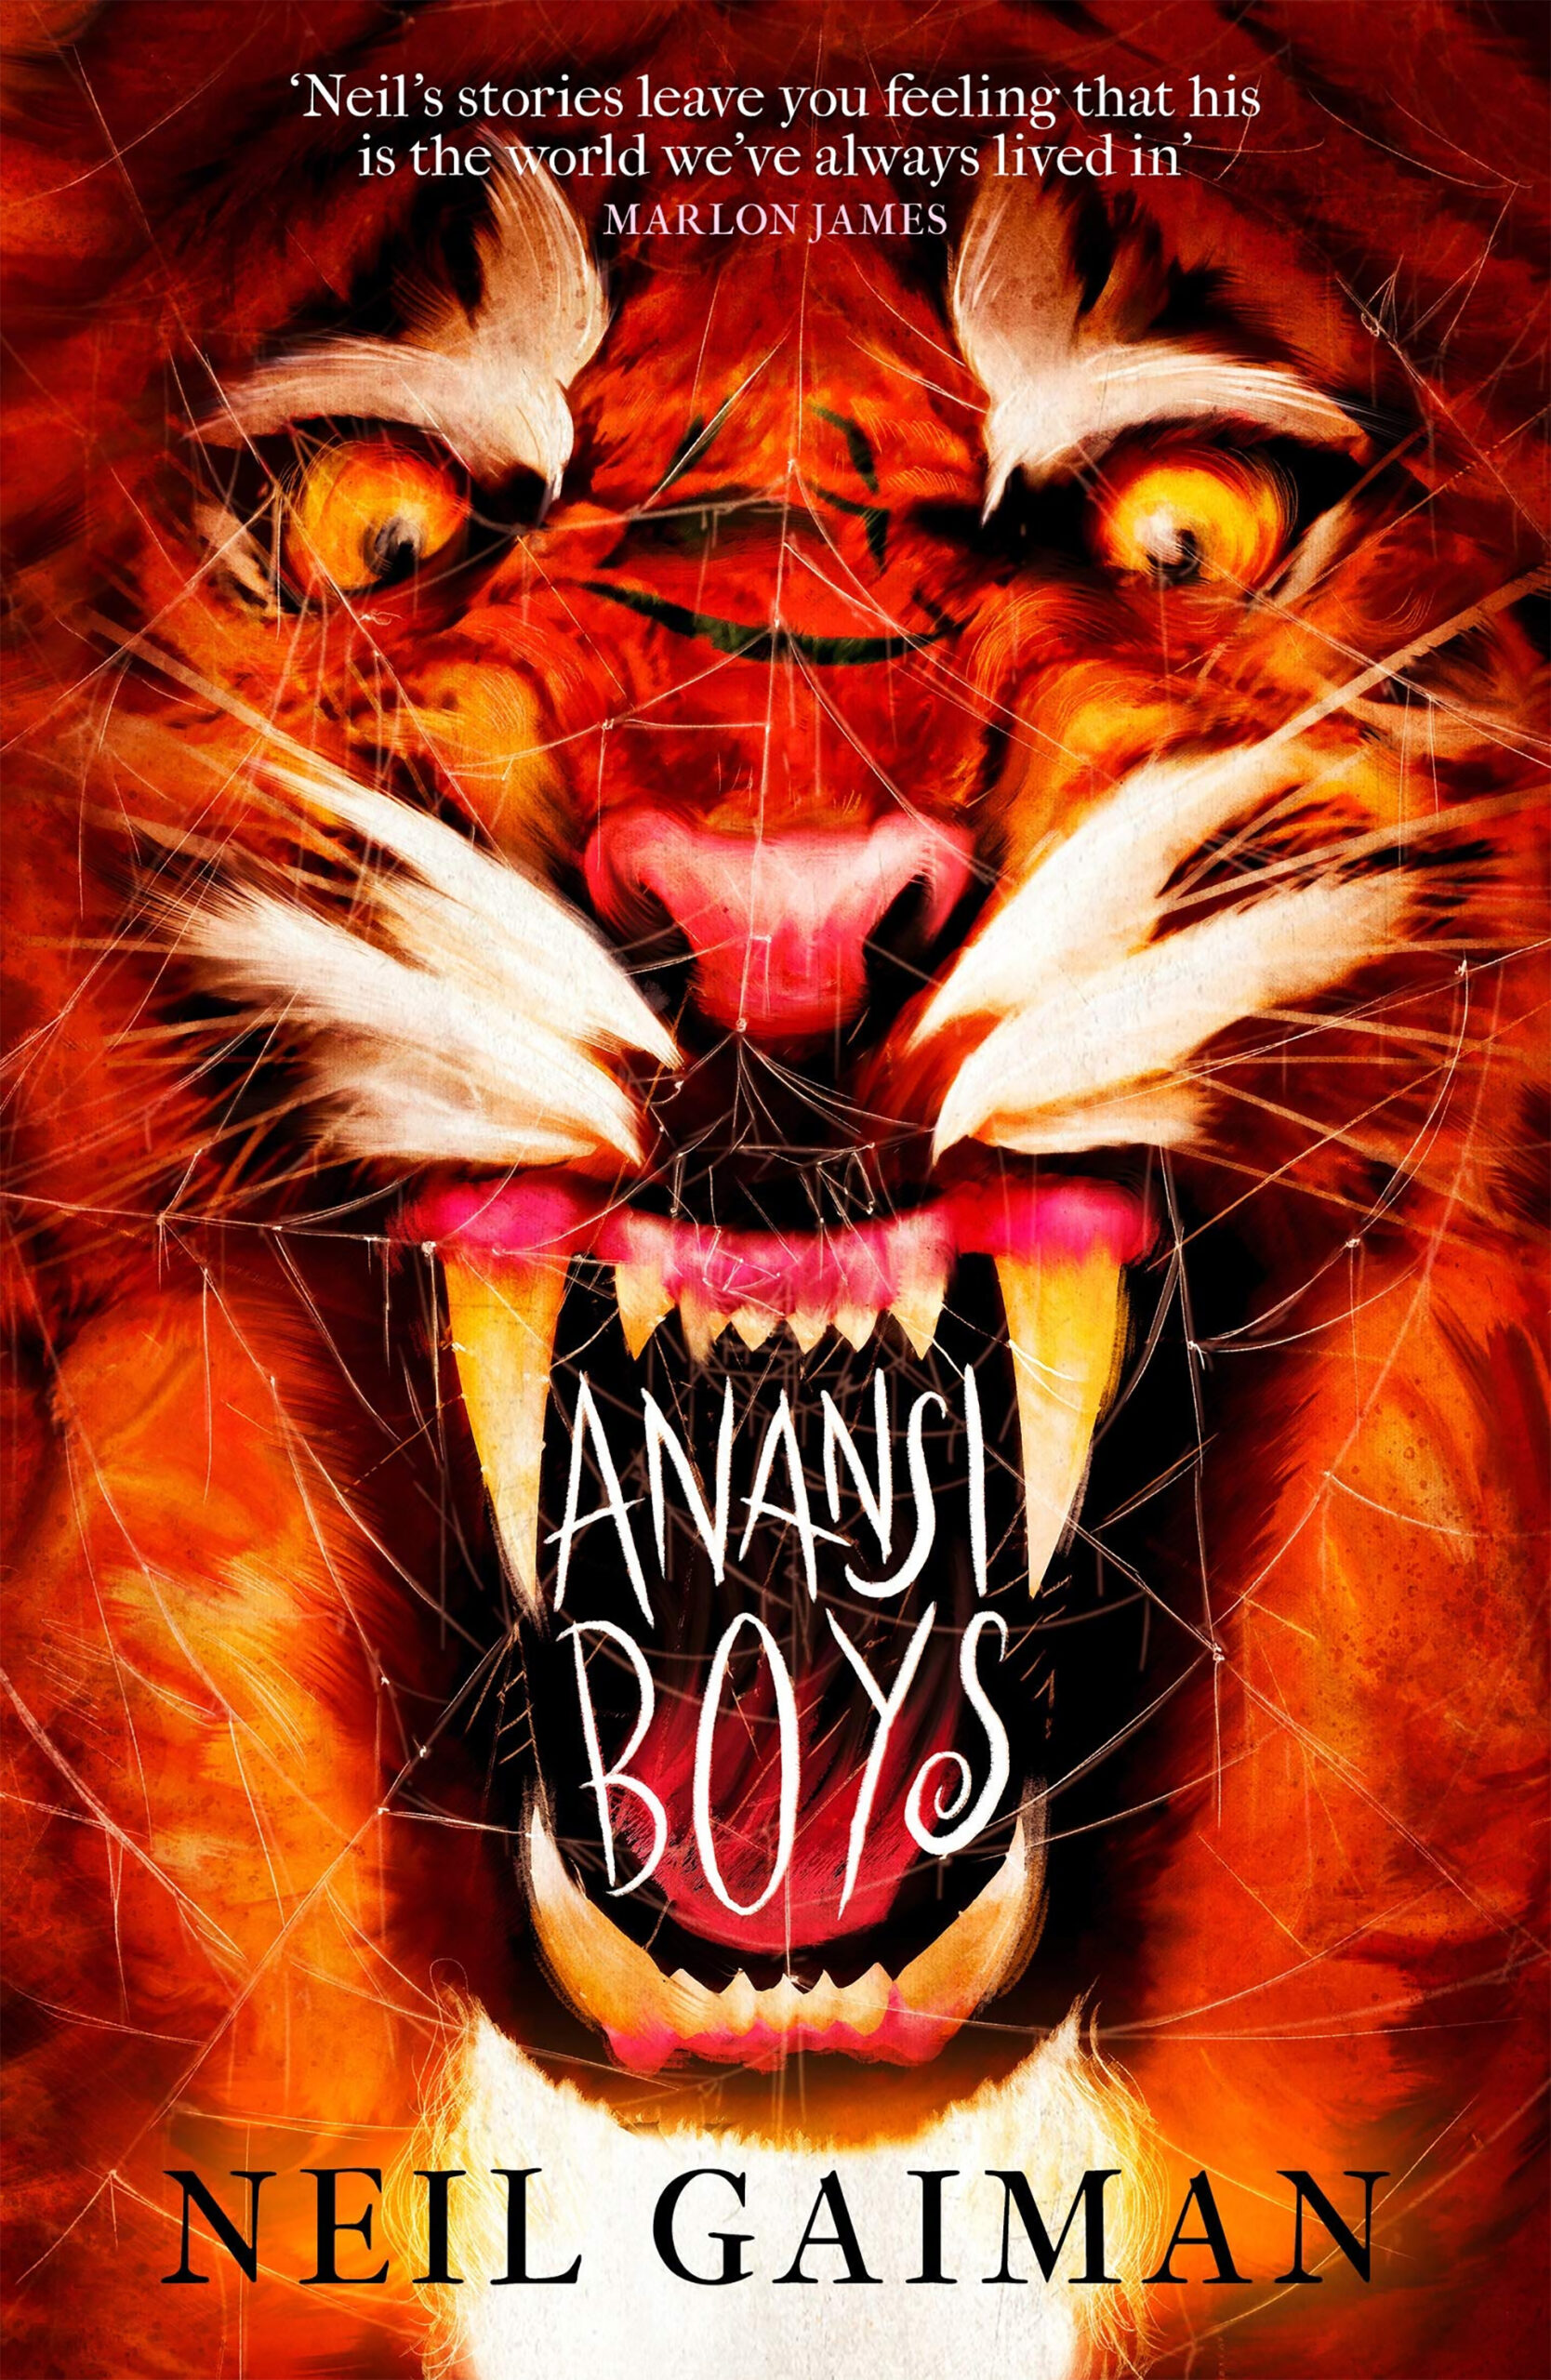 anansi boys delroy lindo cast (1)